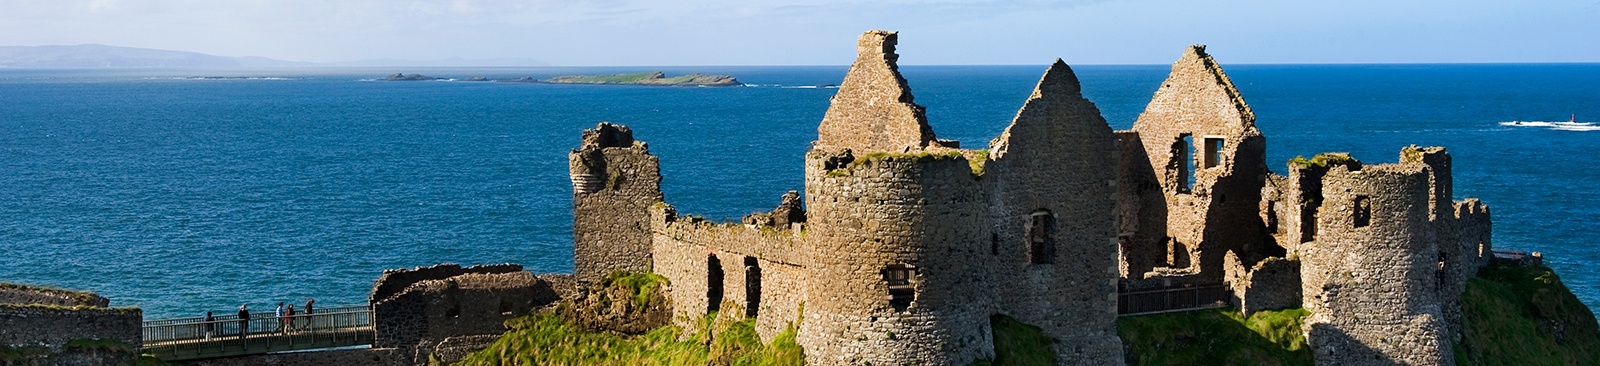 Castle ruins overlooking the ocean